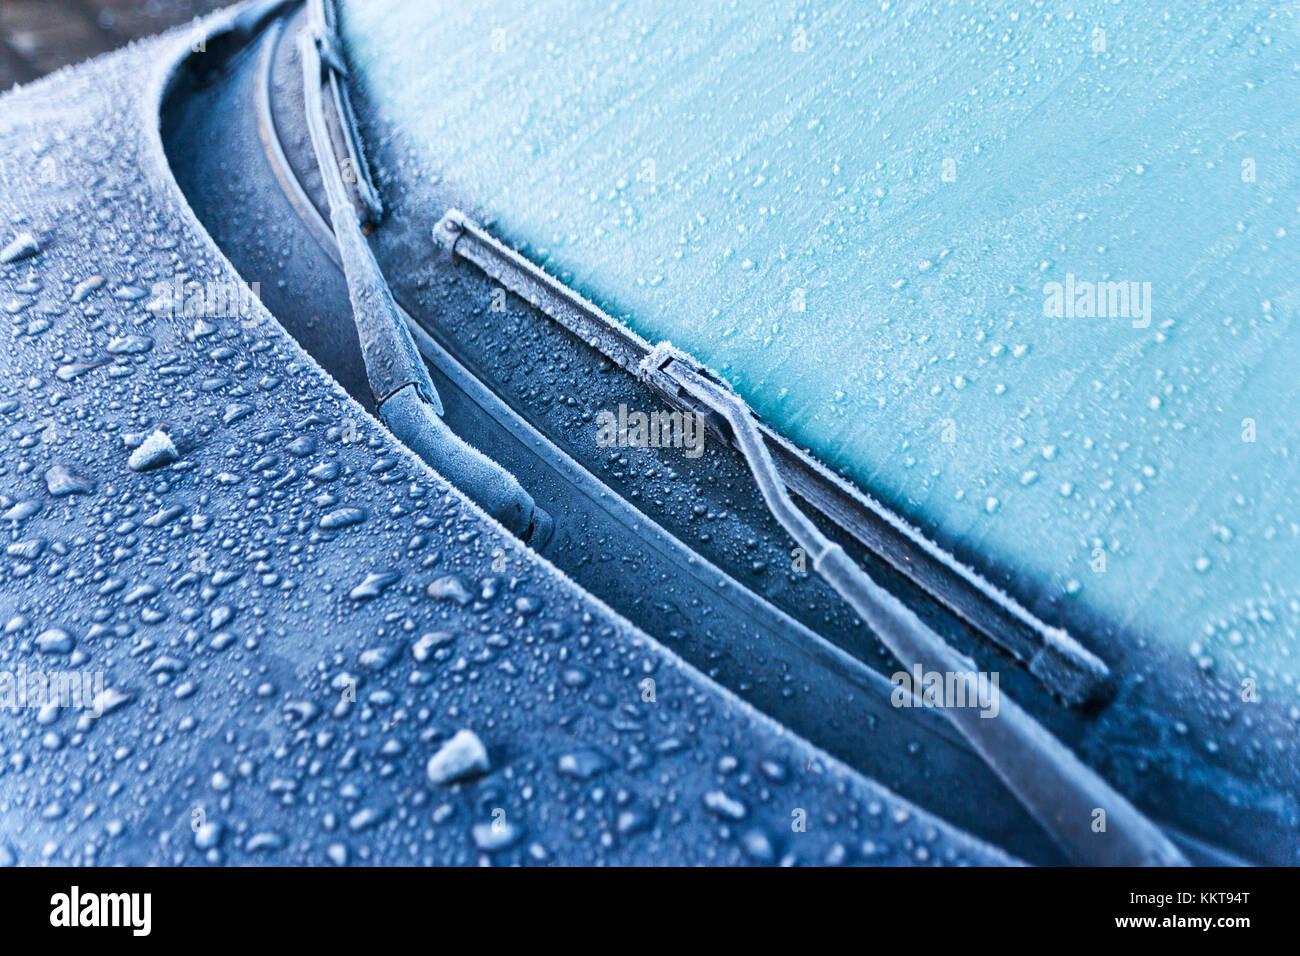 zima a studené počasí - mráz a námraza na skle - přimrzlé stěrače Stock Photo